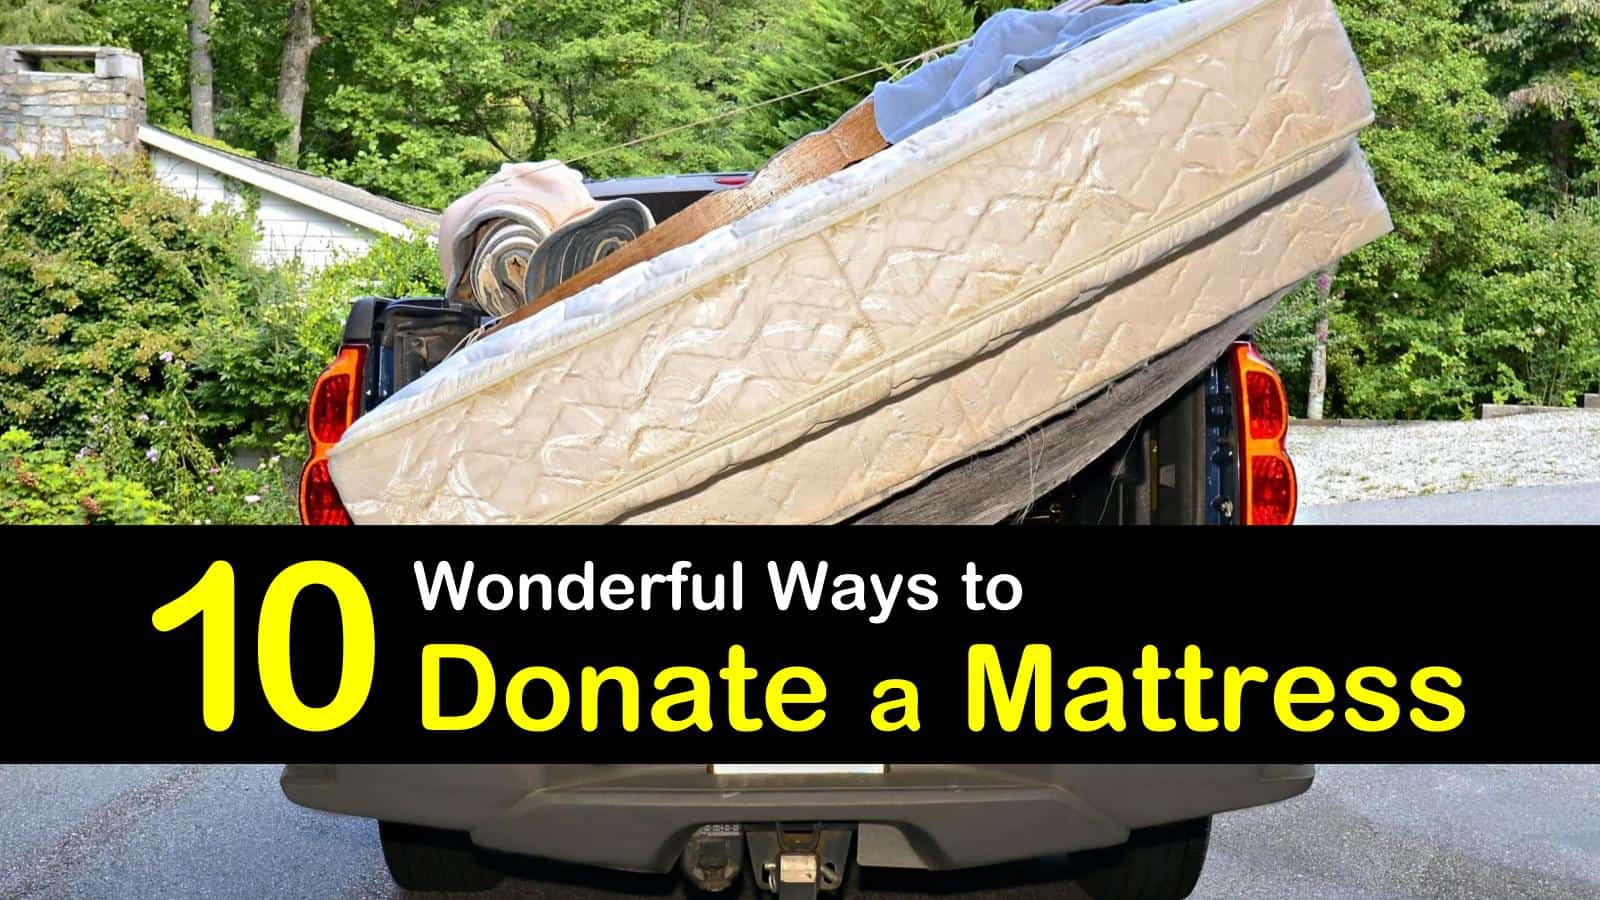 can't donate mattress